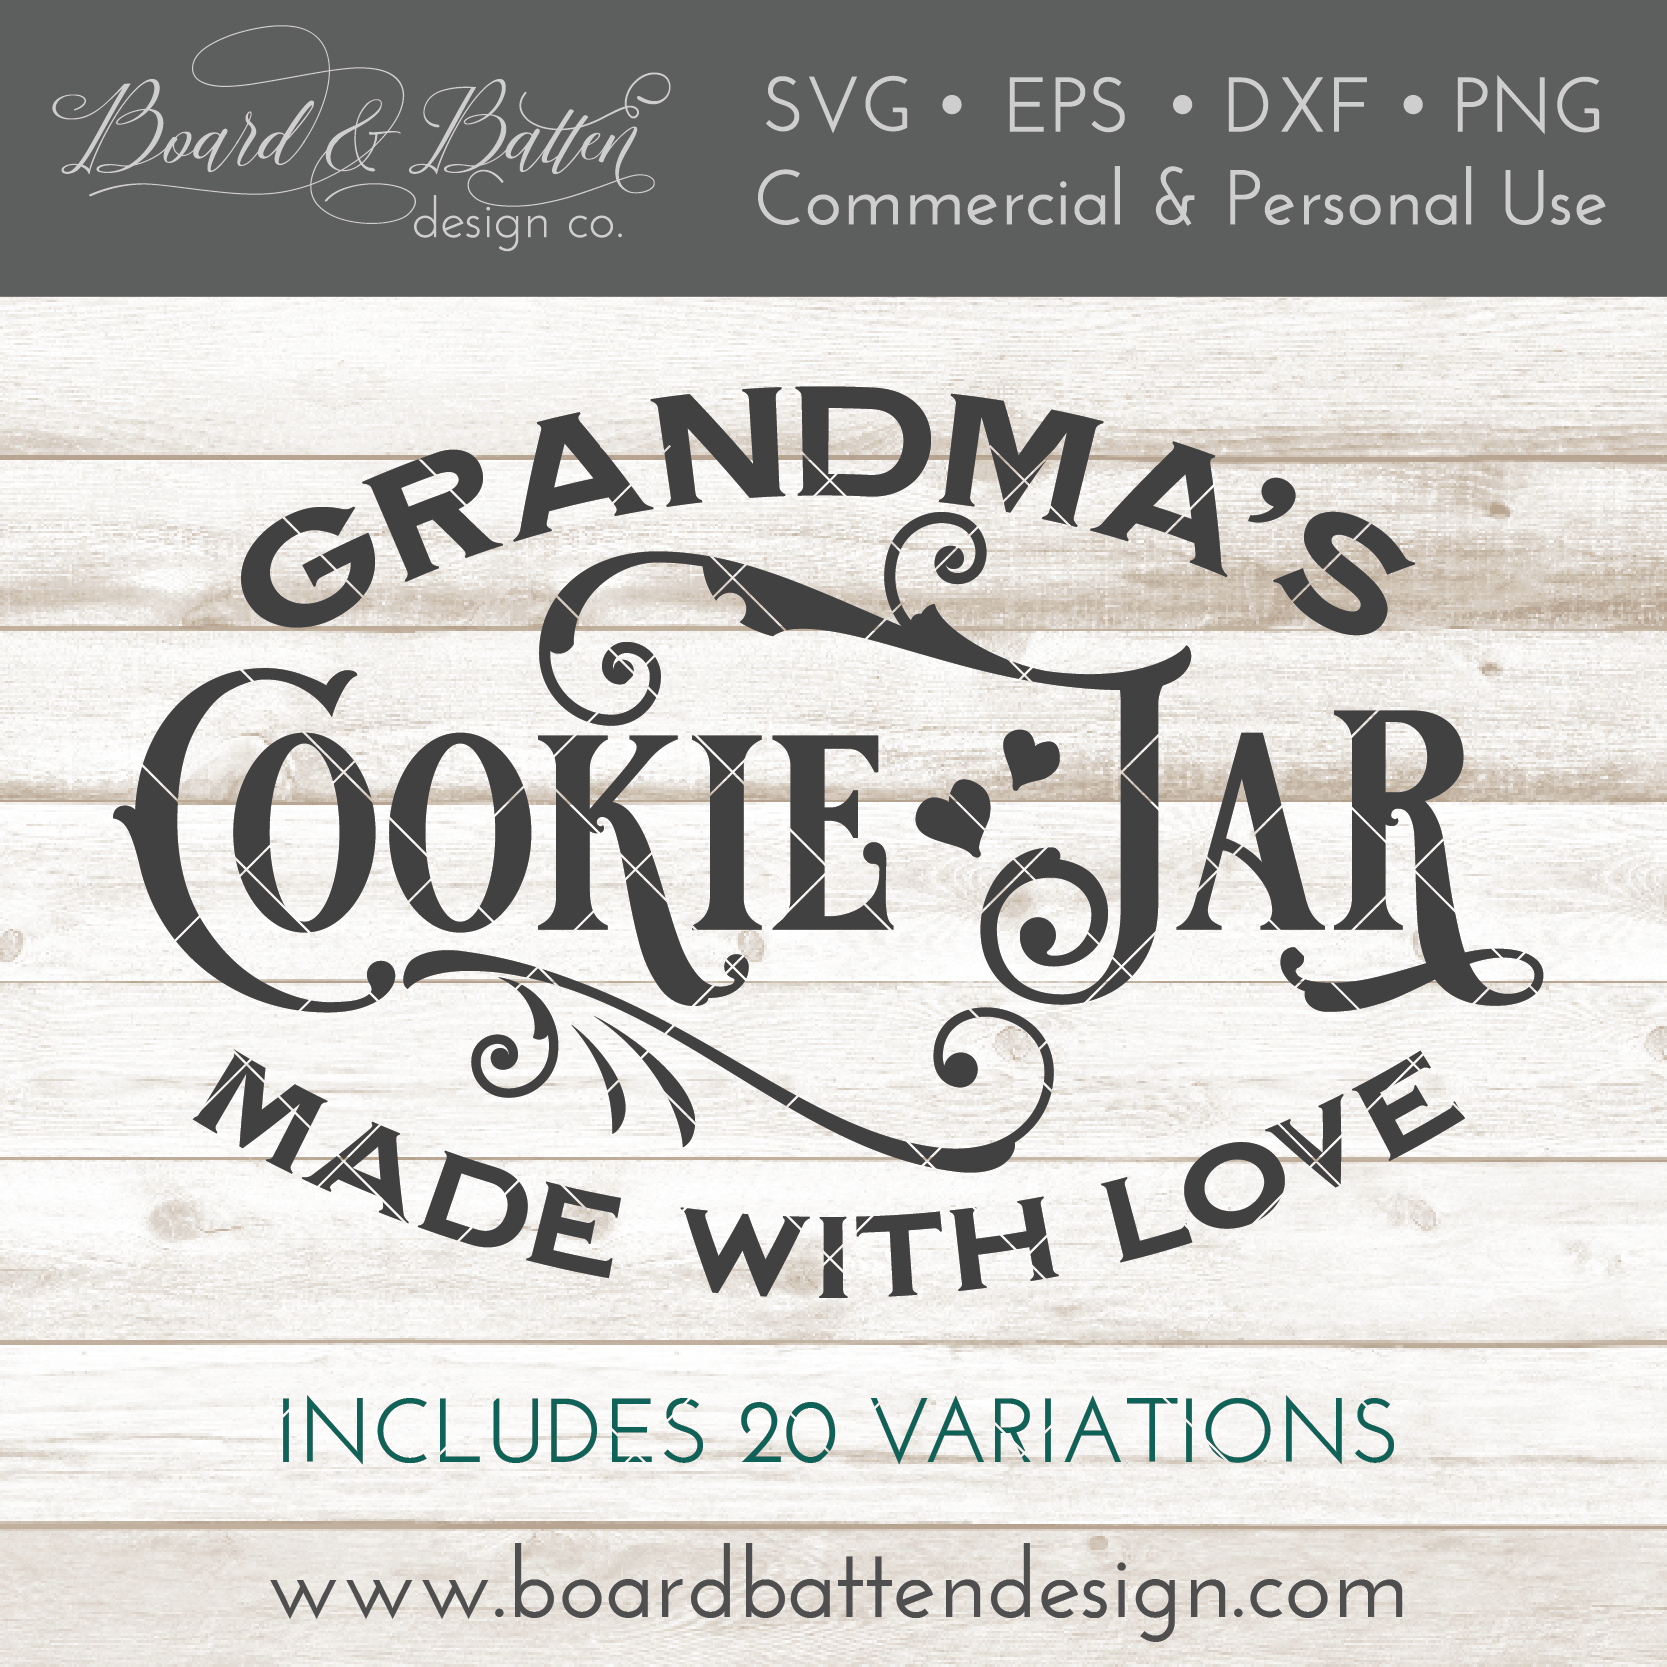 Cookie Jar SVG File With Name Variations – Board & Batten Design Co.